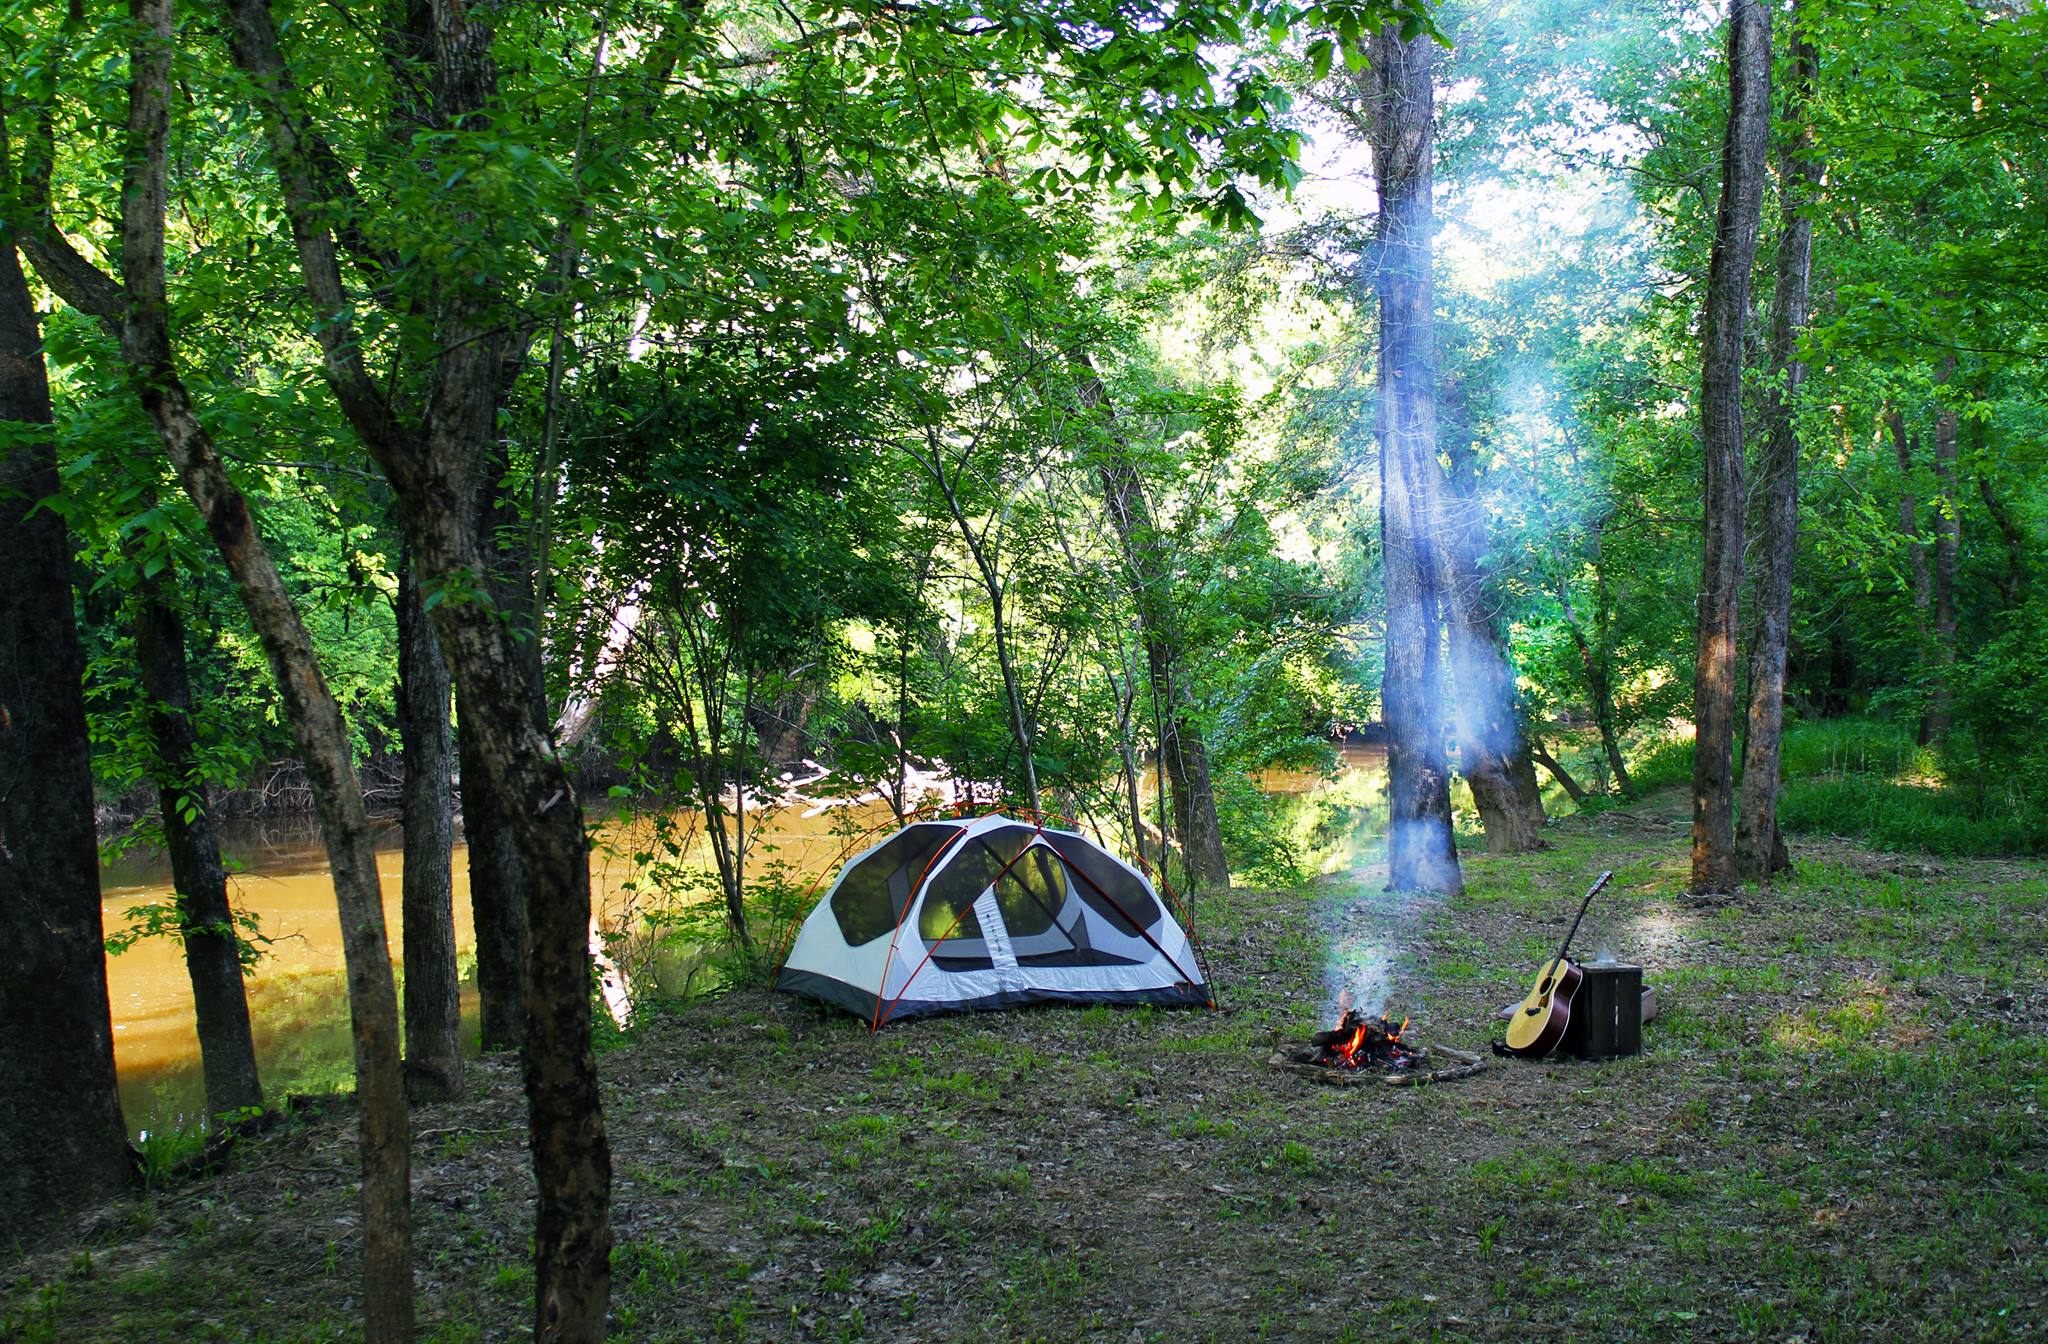 Tar River Tent Camping(1-3 tents)